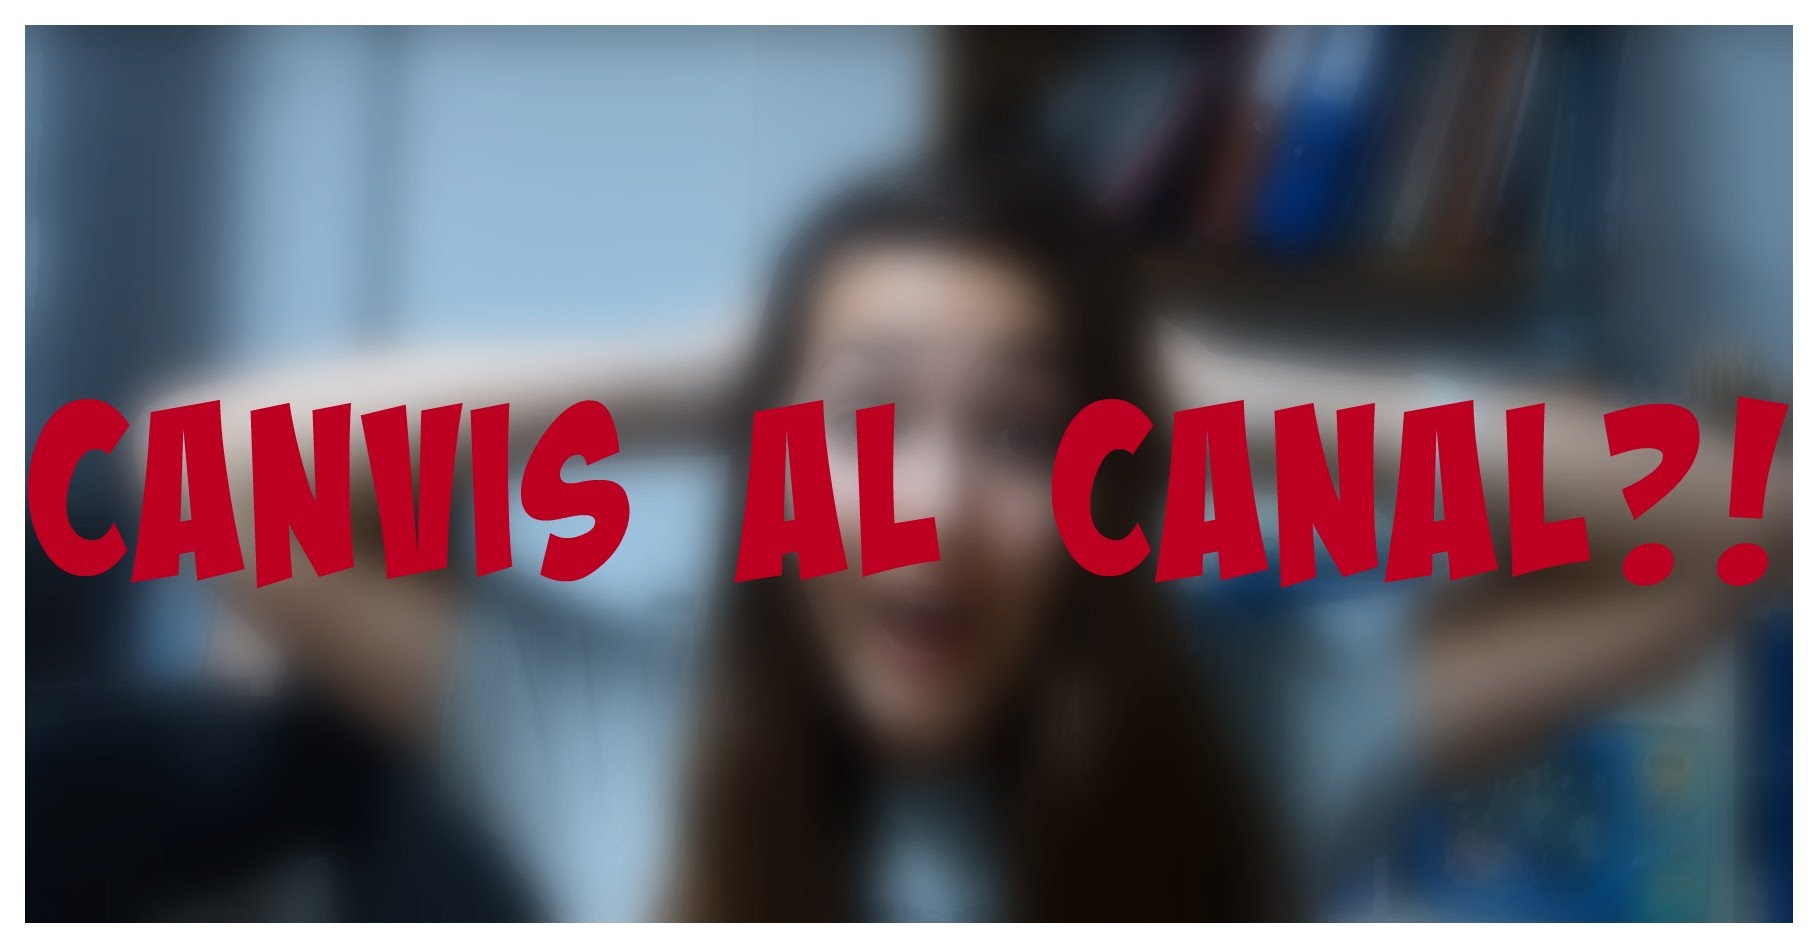 CANVIS AL CANAL? | Ban Anna de TheTutoCat